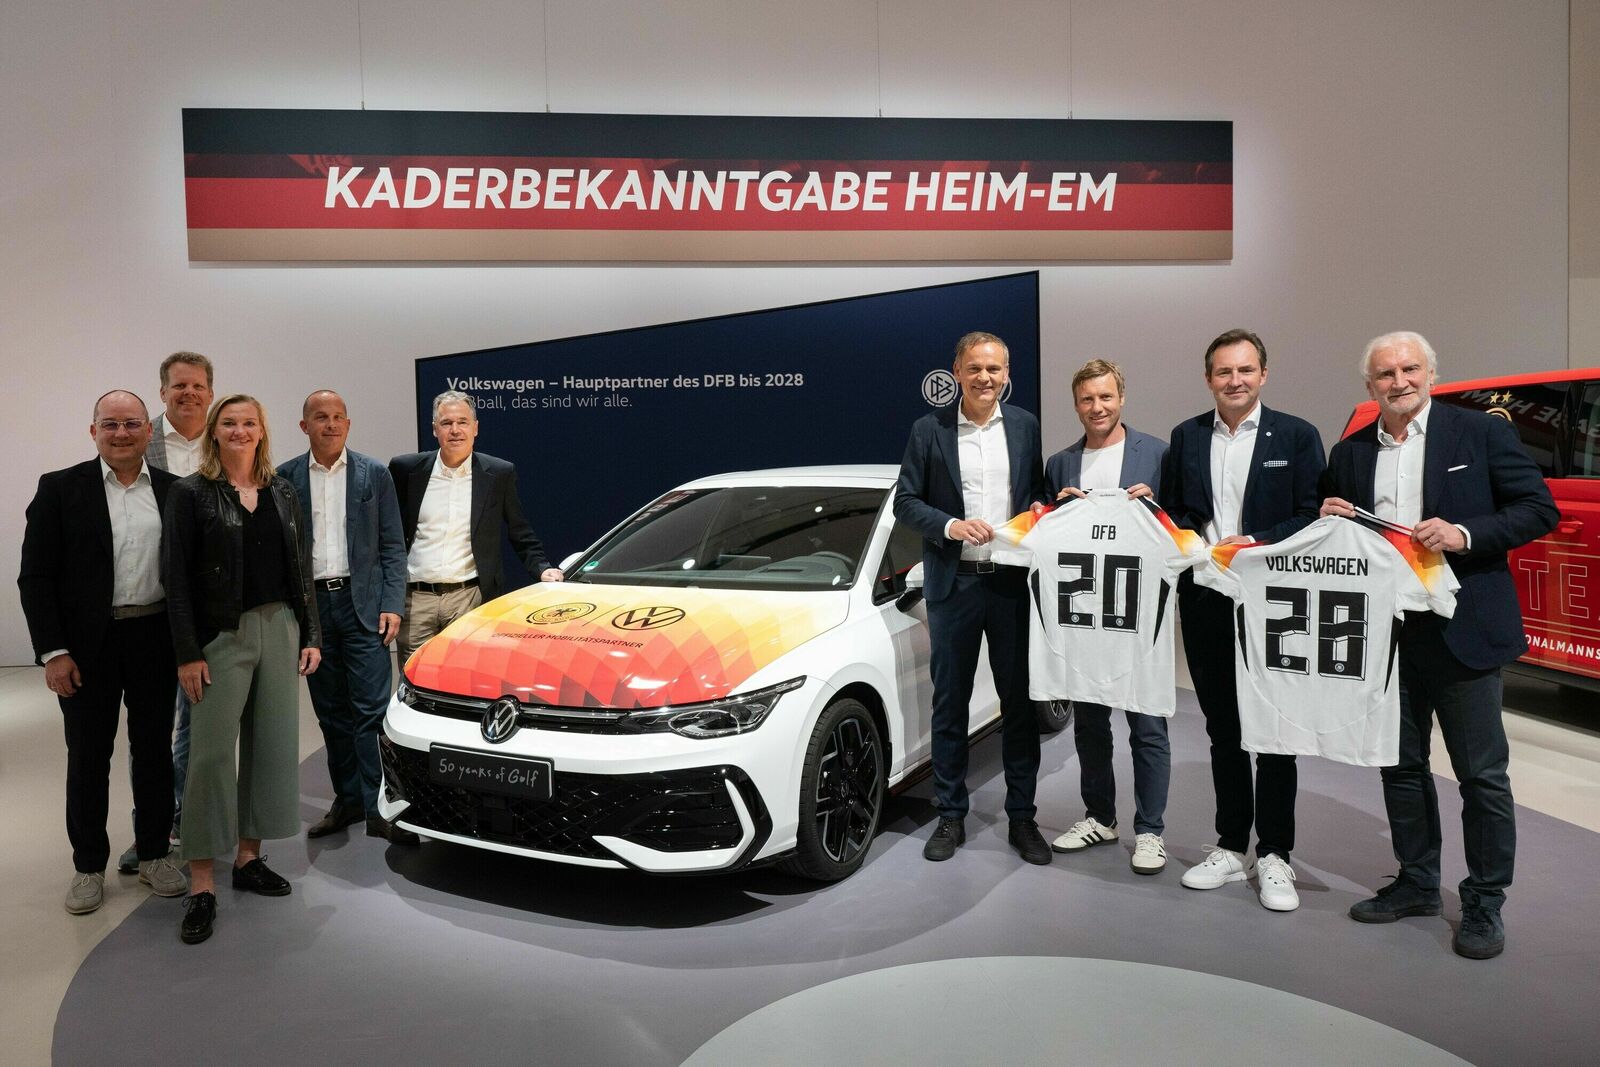 Doppelpass für den gesamten Fußball: Volkswagen und DFB verlängern Partnerschaft bis 2028